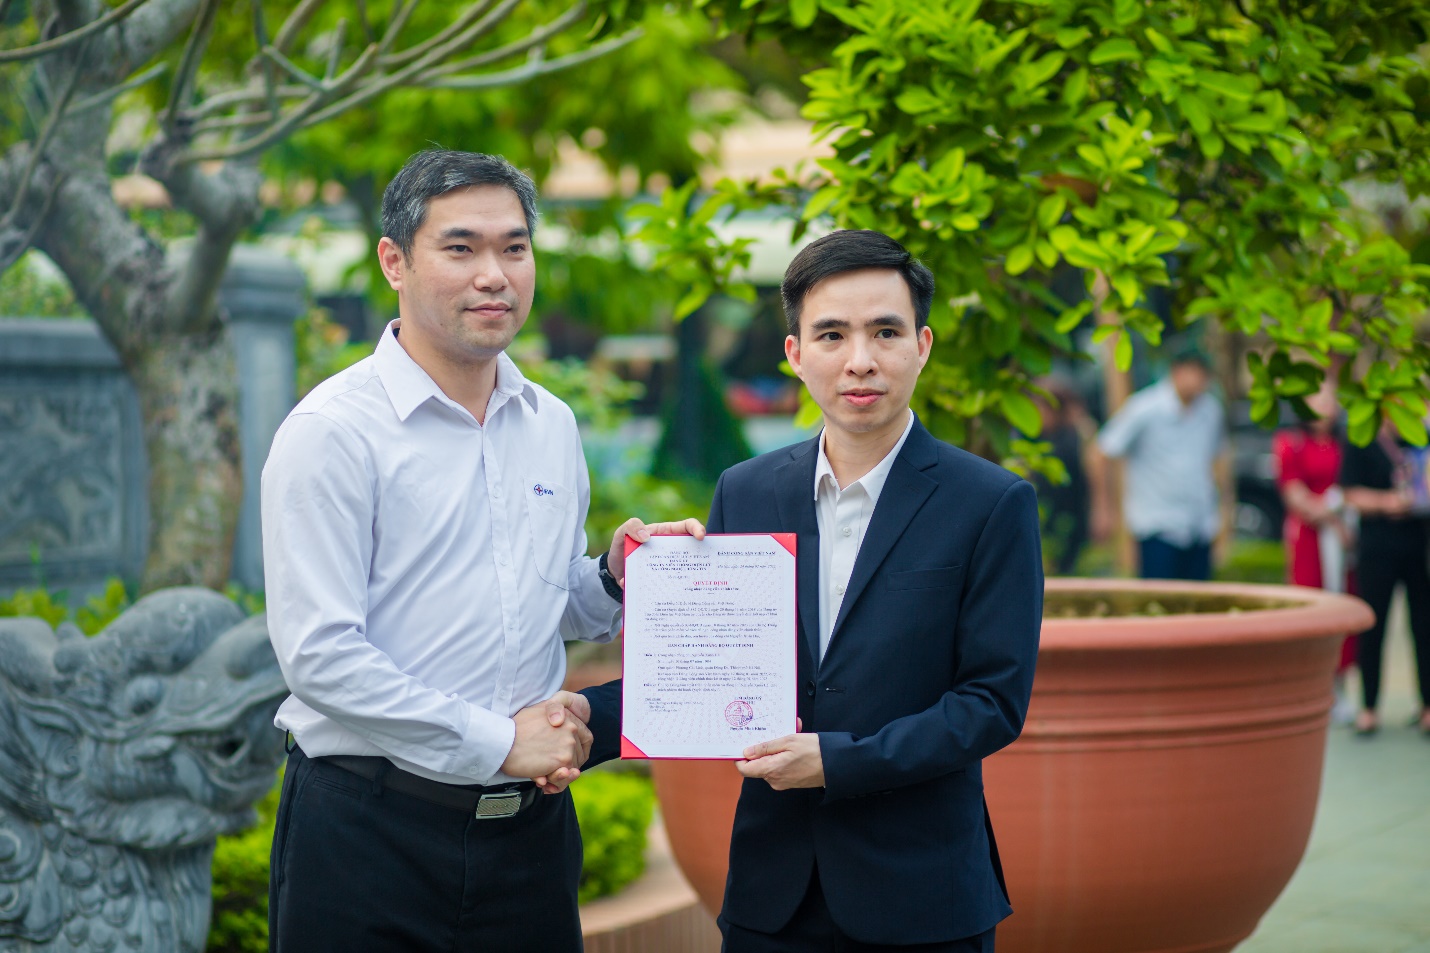 Đảng viên chi bộ Trung tâm phát triển phần mềm được trao Quyết định công nhận đảng chính thức tại buổi sinh hoạt ngoại khóa “Về nguồn” tại di tích lịch sử Nhà tù Sơn La.